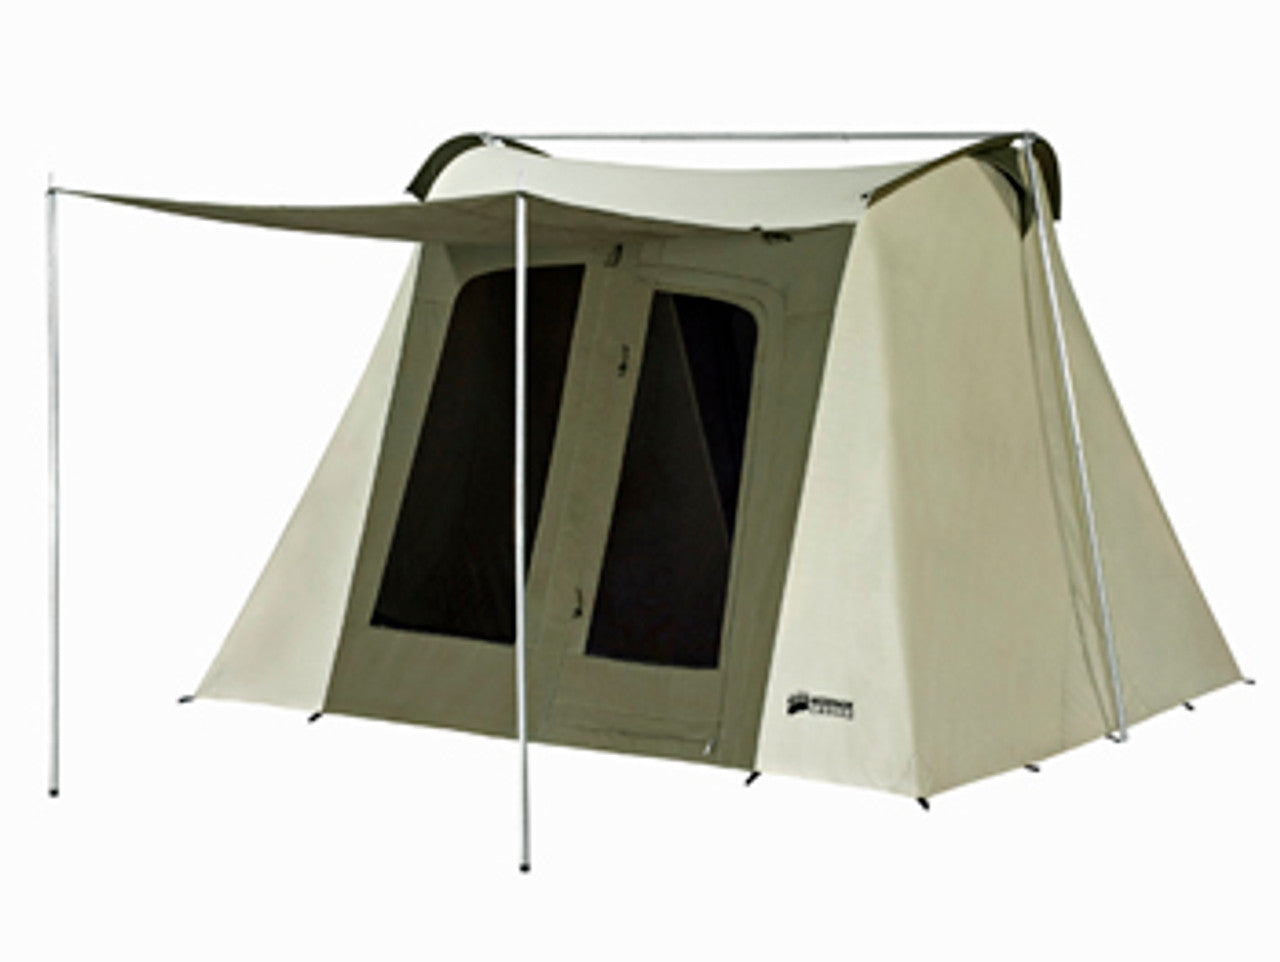 Kodiak Canvas - 10 x 10 ft. Flex-Bow Canvas Tent Deluxe